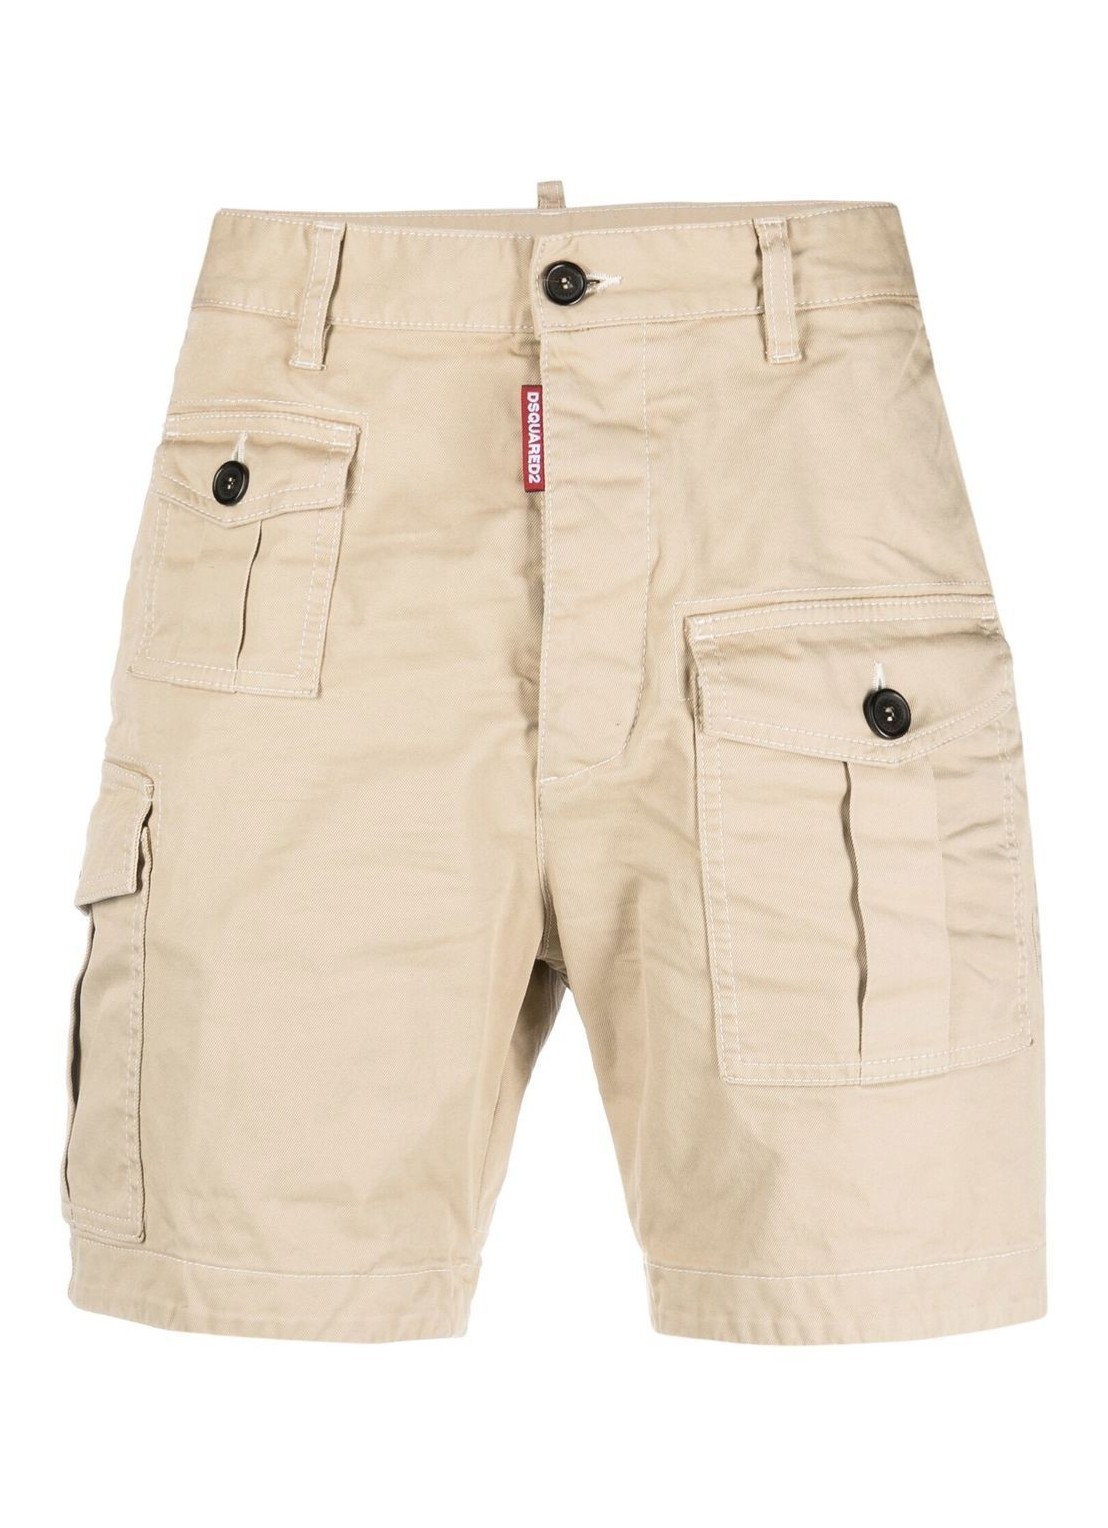 Pantalon corto dsquared sexy cargo shorts - s74mu0780s39021 111 talla beige
 